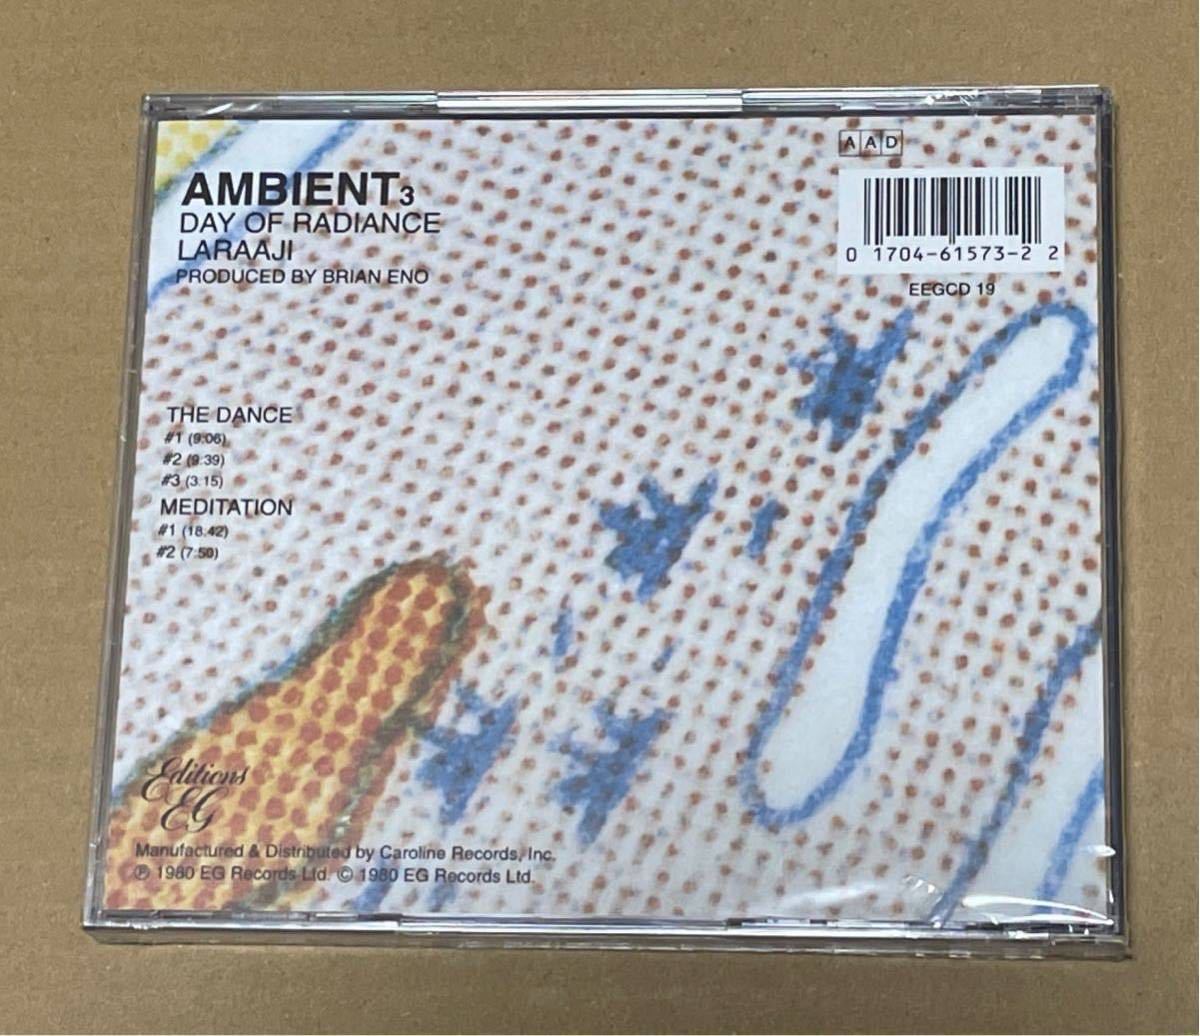 未開封 送料込 Laraaji - Ambient 3 (Day Of Radiance) 輸入盤CD / Brian Eno / EEGCD19, 017046157322_画像2